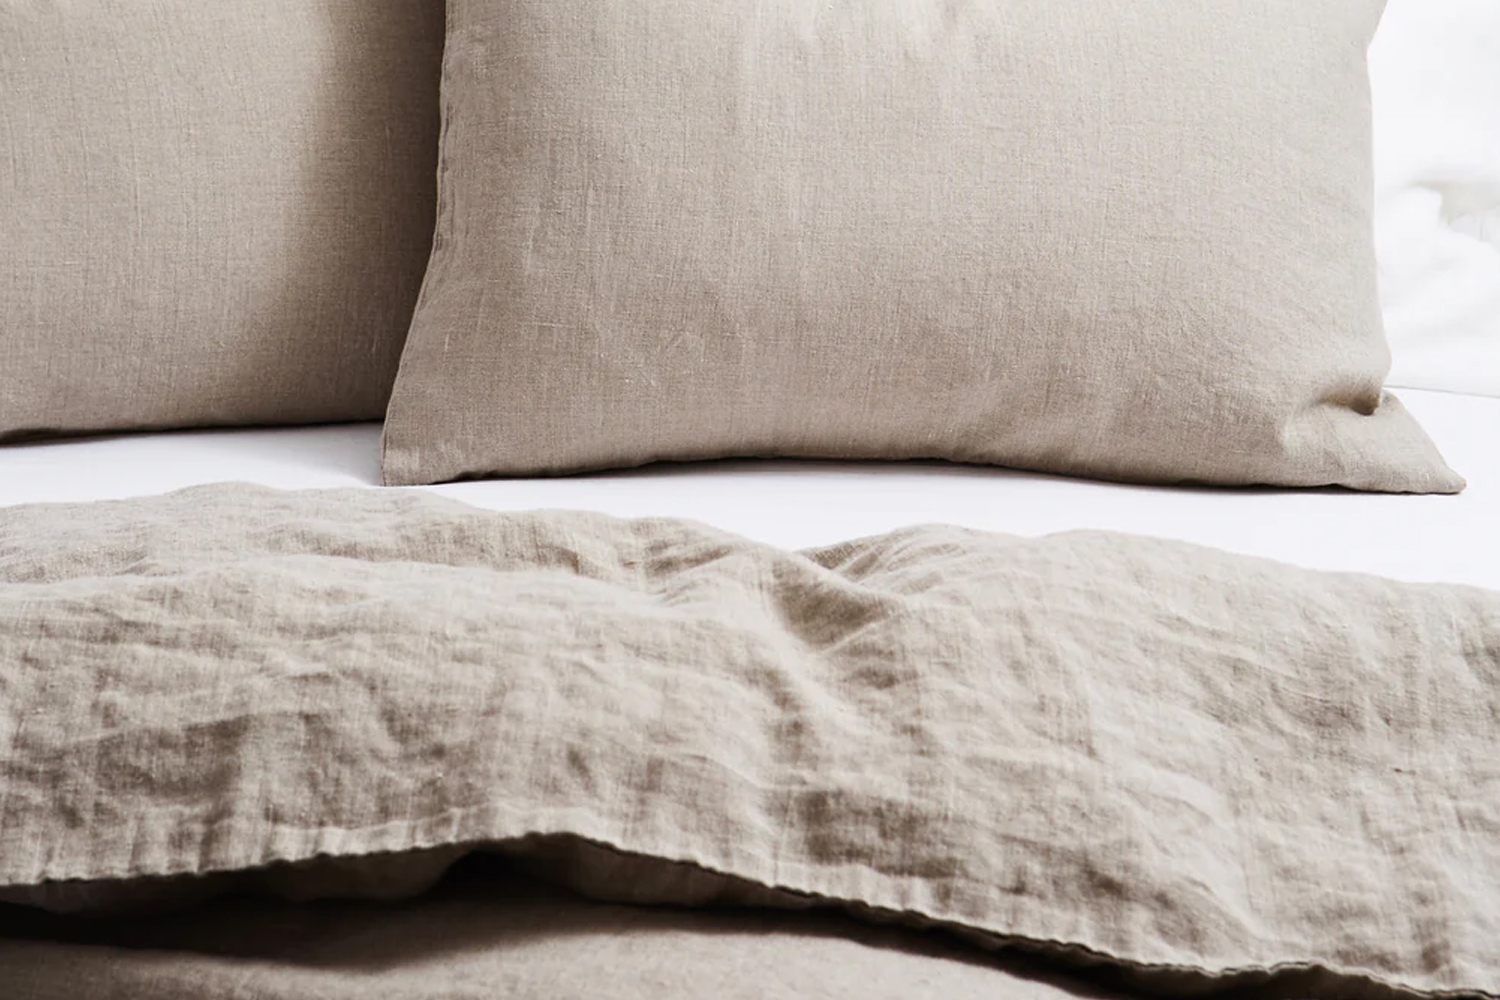 fog linen pillowcases in natural linen are \$84 each and the fog linen duvet co 14